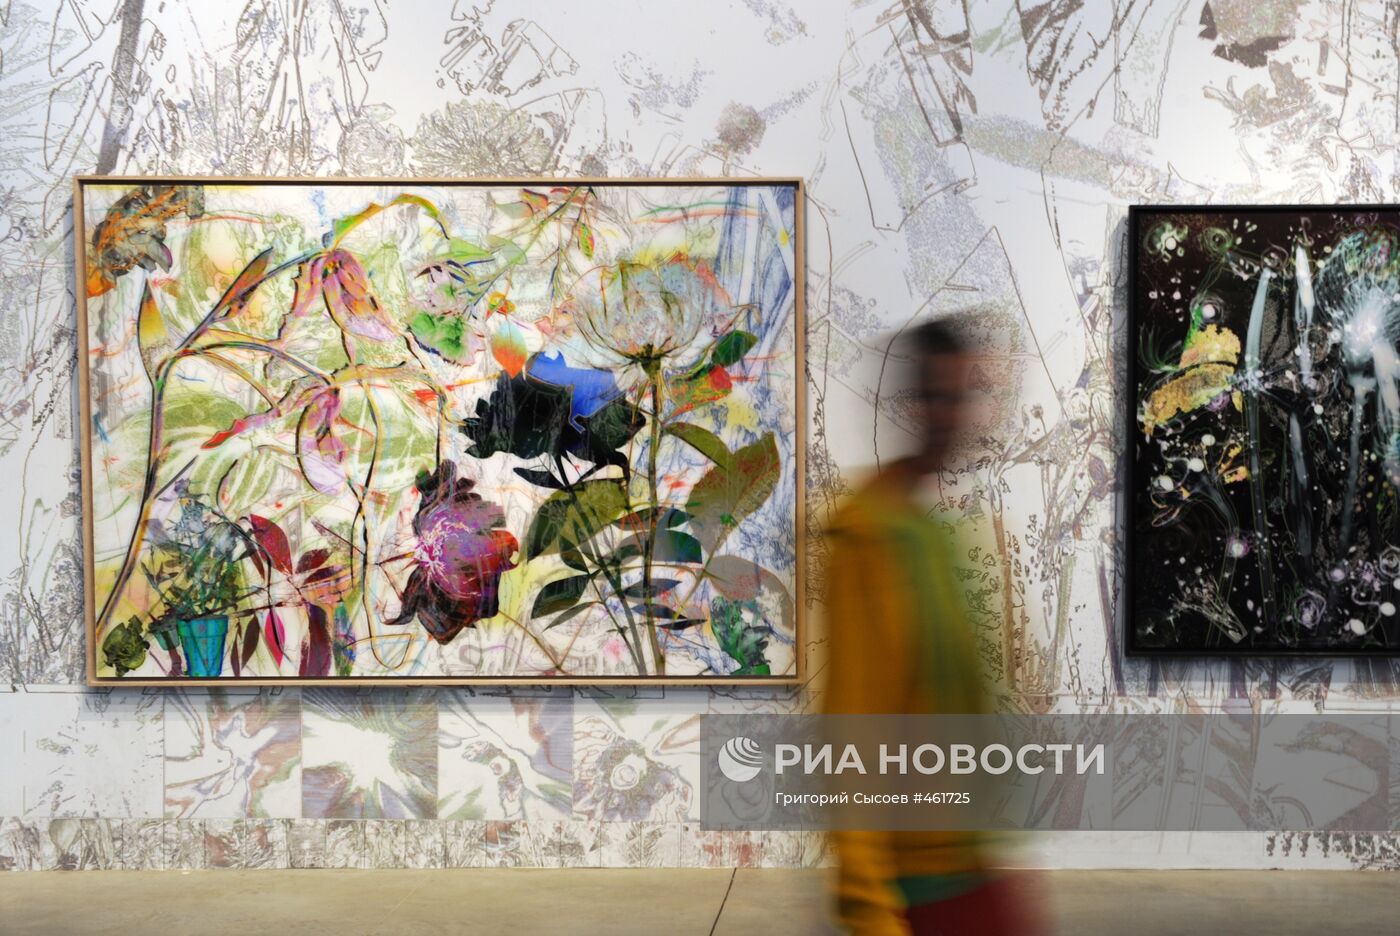 III Московская биеннале современного искусства